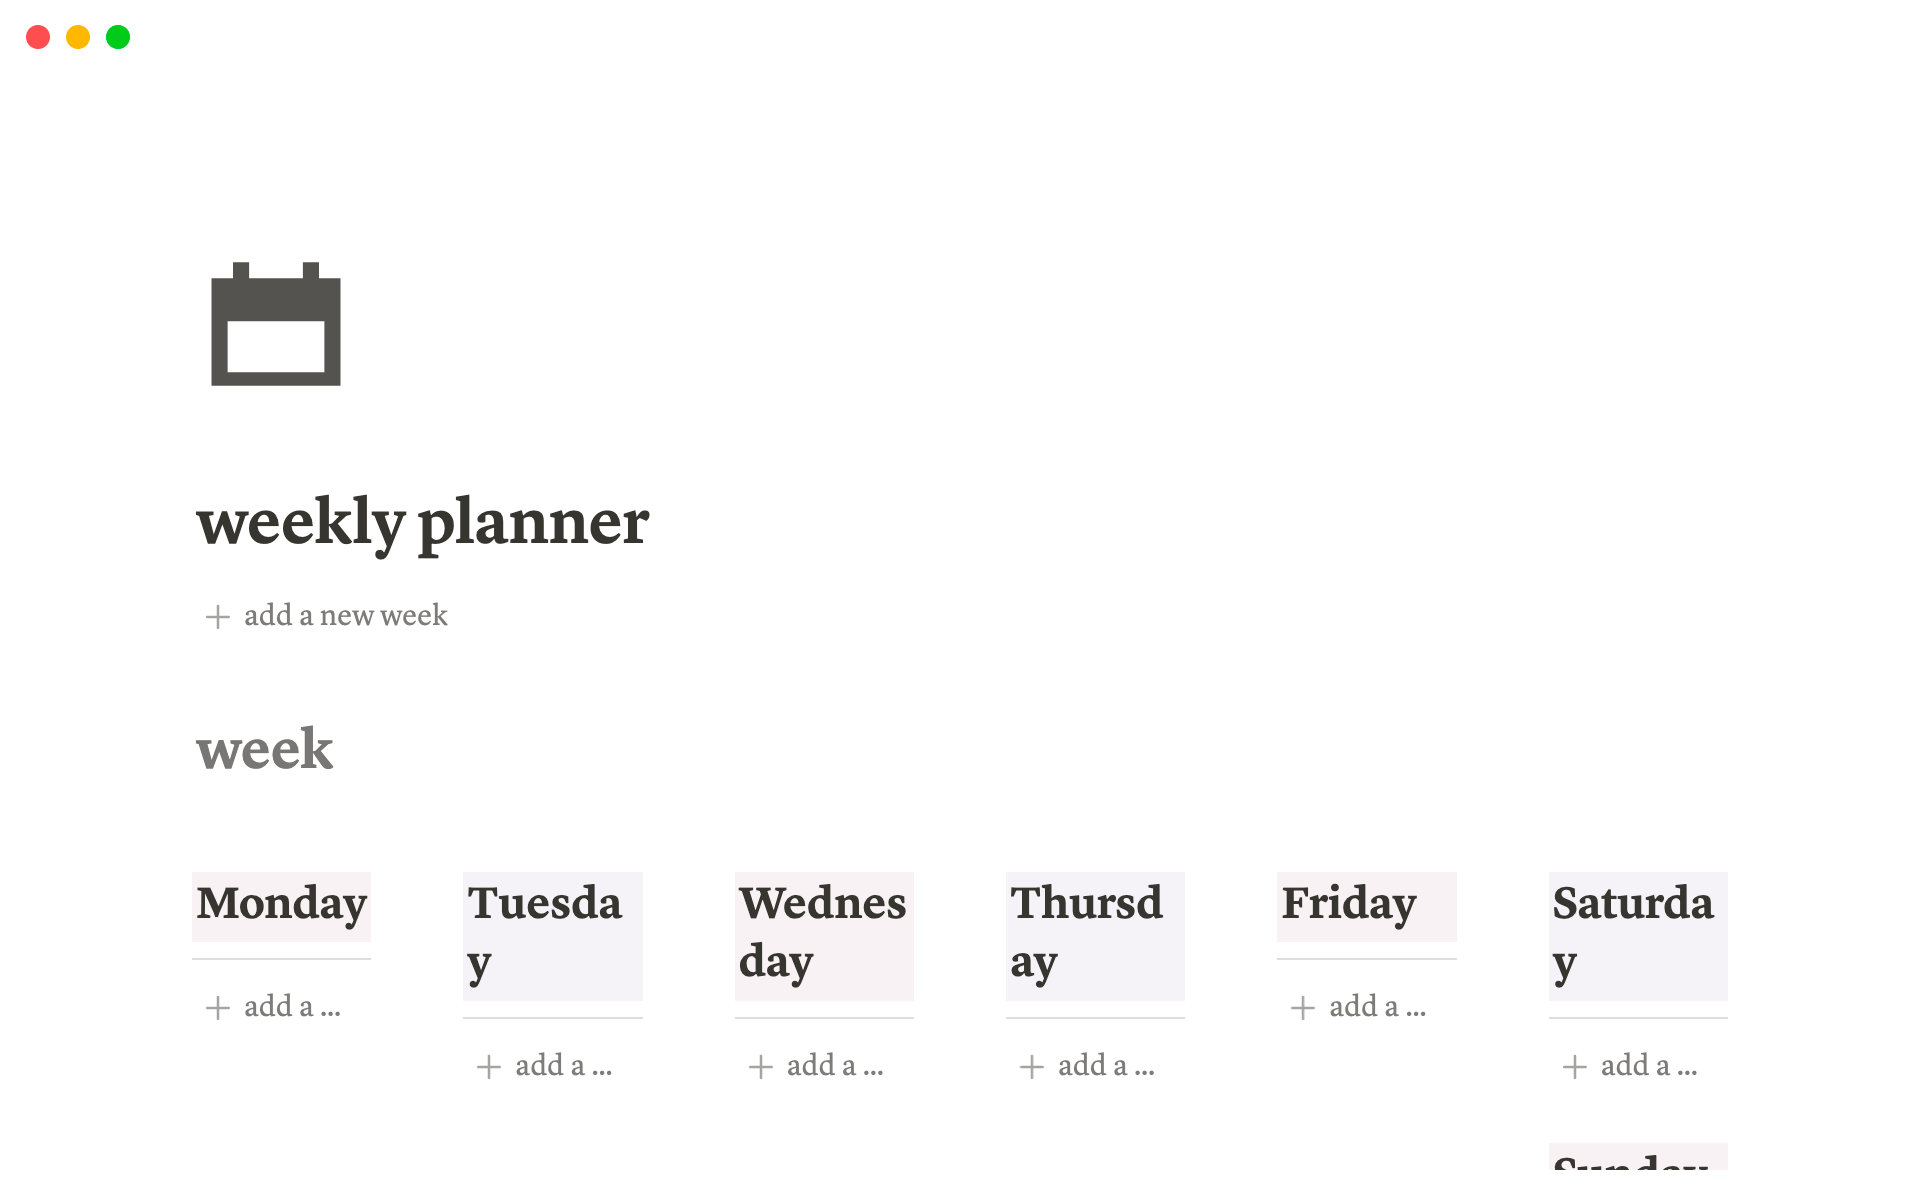 Plan your week.